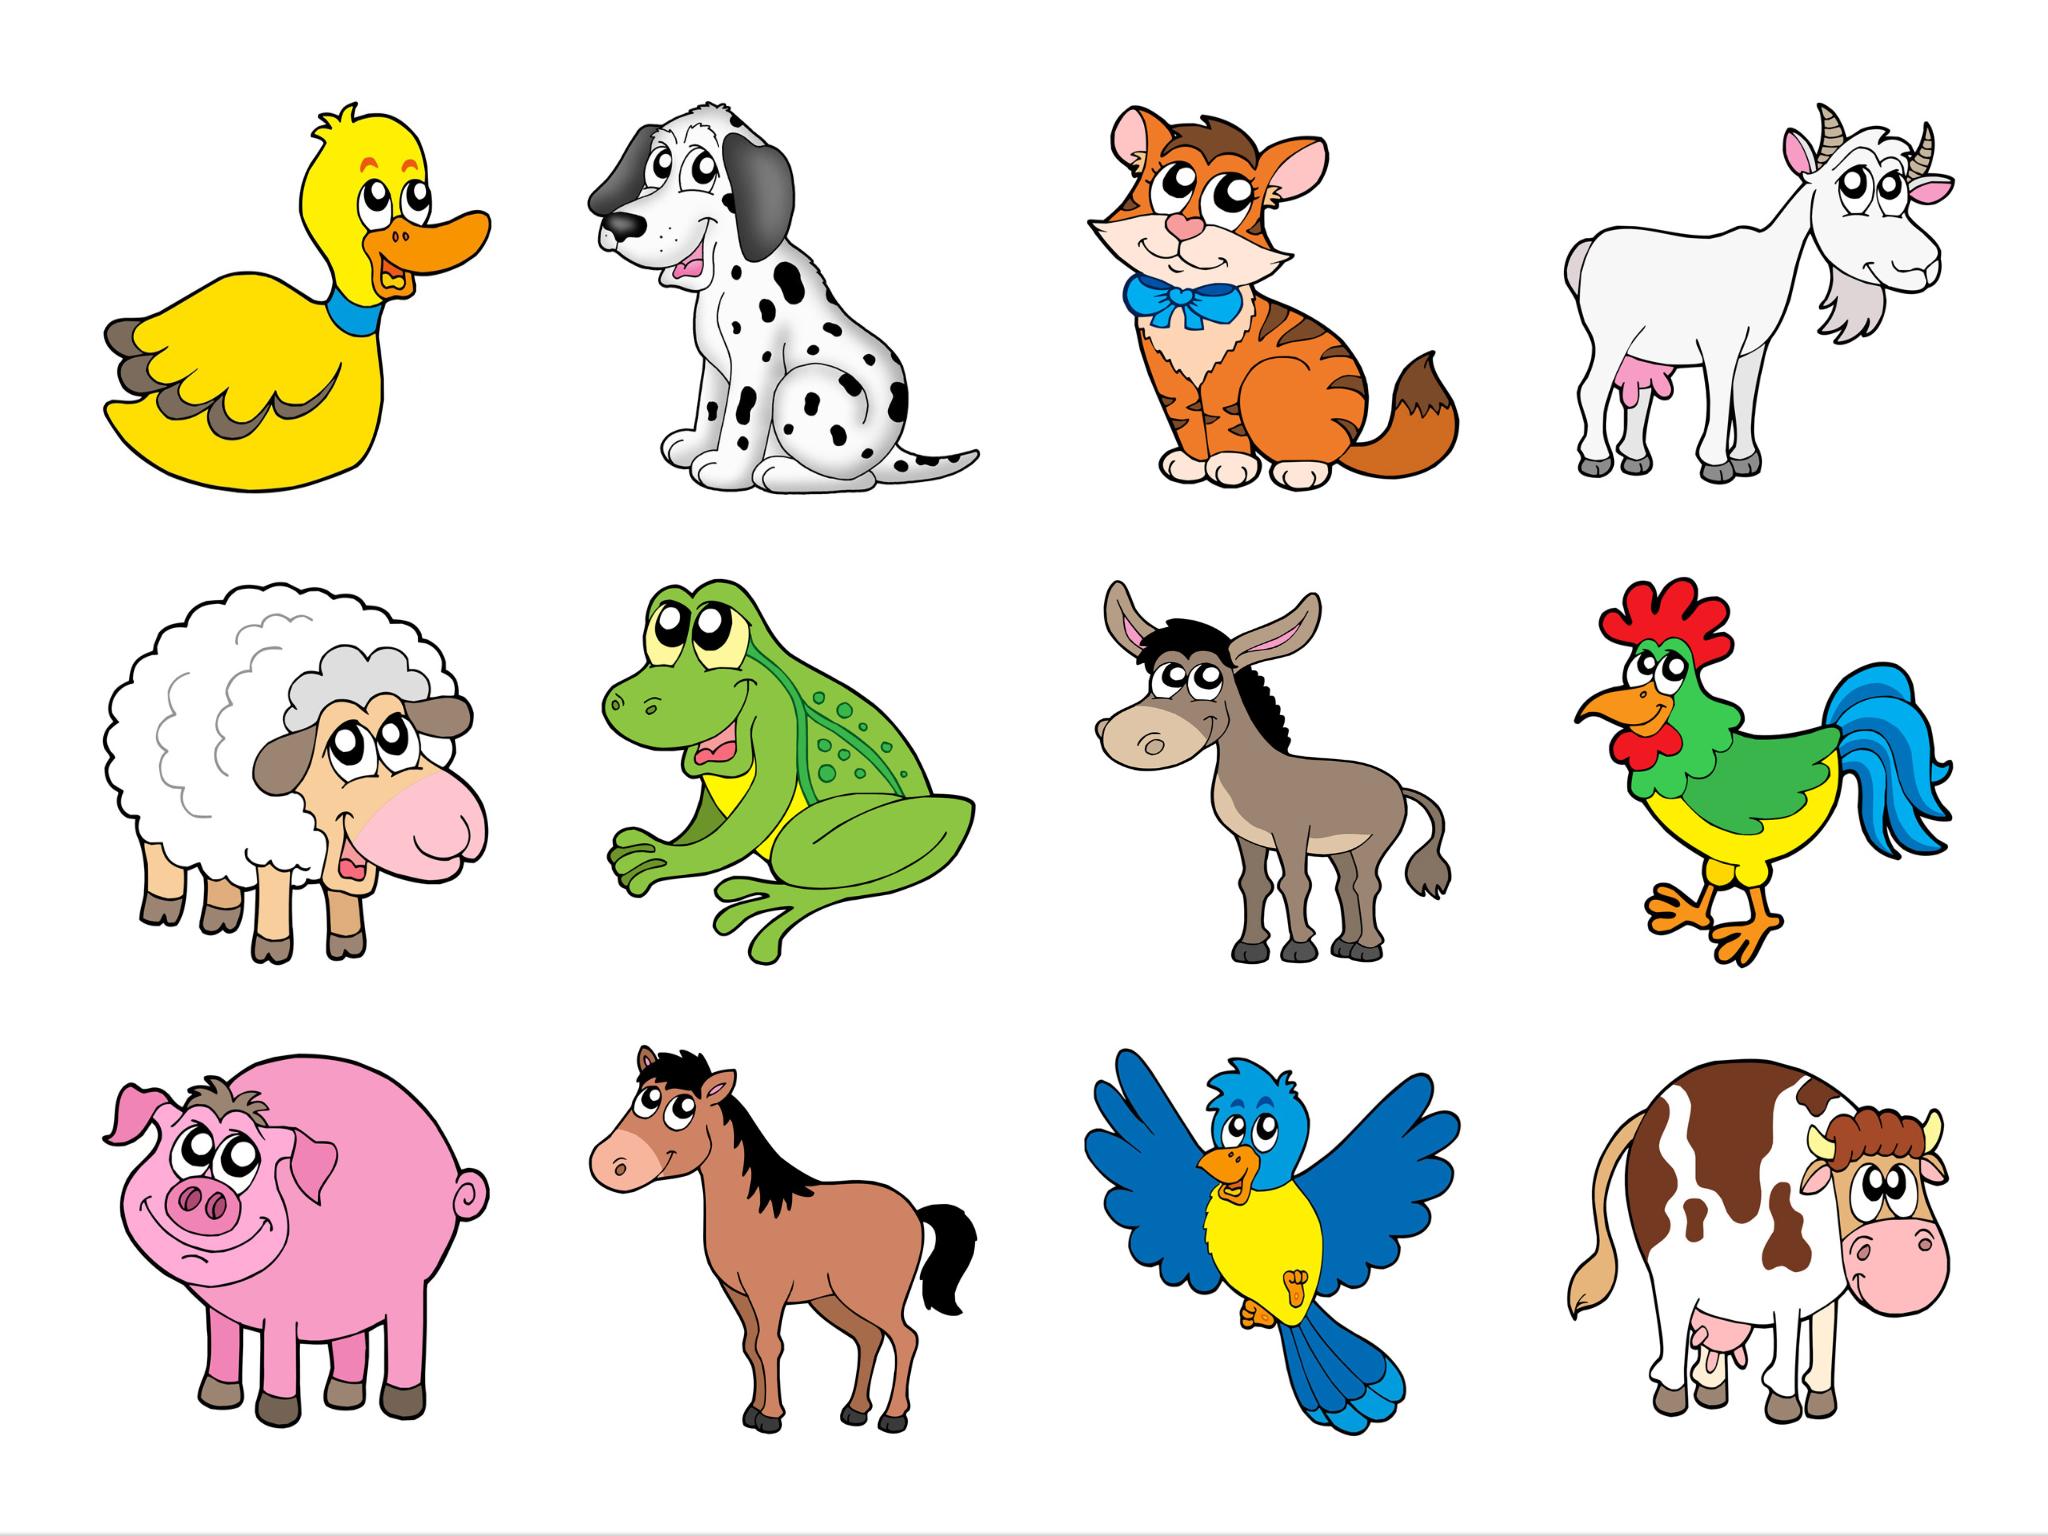 Изображения домашних животных для детей. Для детей. Животные. Мультяшные животные. Иллюстрации животных для детей. Name 5 pets